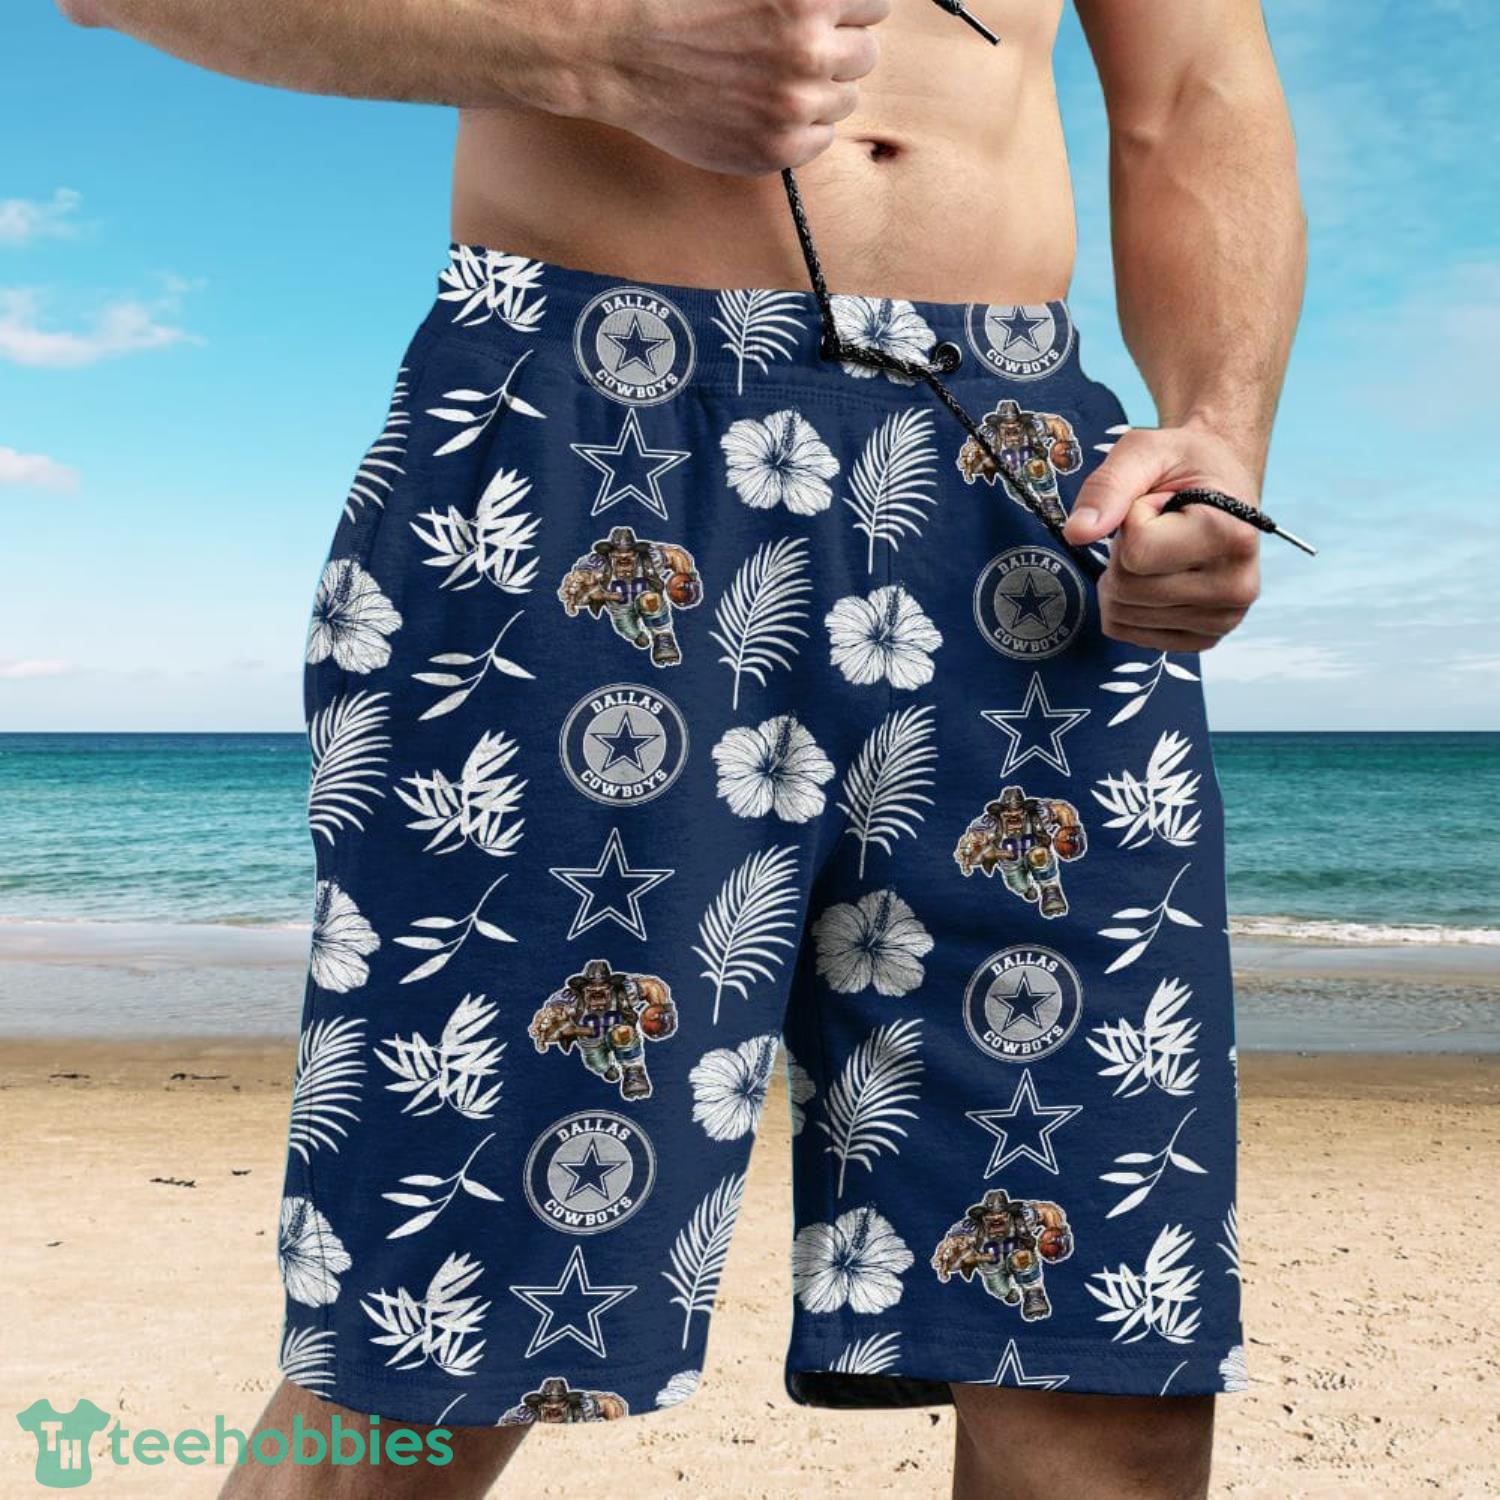 Dallas Cowboys Symbols And Tropical Flowers Pattern Combo Hawaiian Shirt And Shirt Product Photo 1